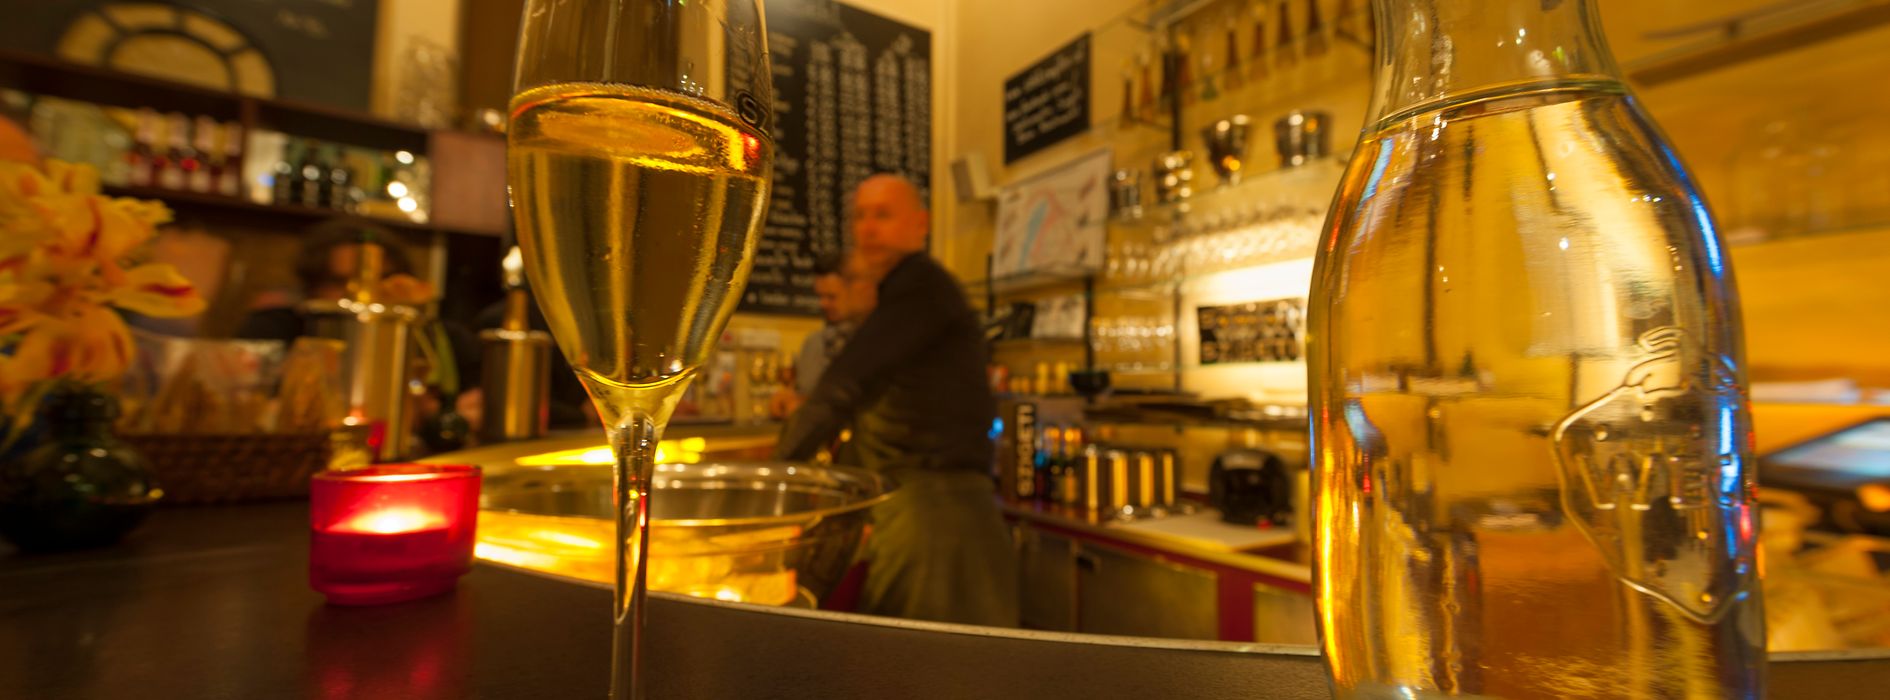 Szigeti pezsgőbolt, belső nézet egy pohár pezsgővel és vendégekkel 